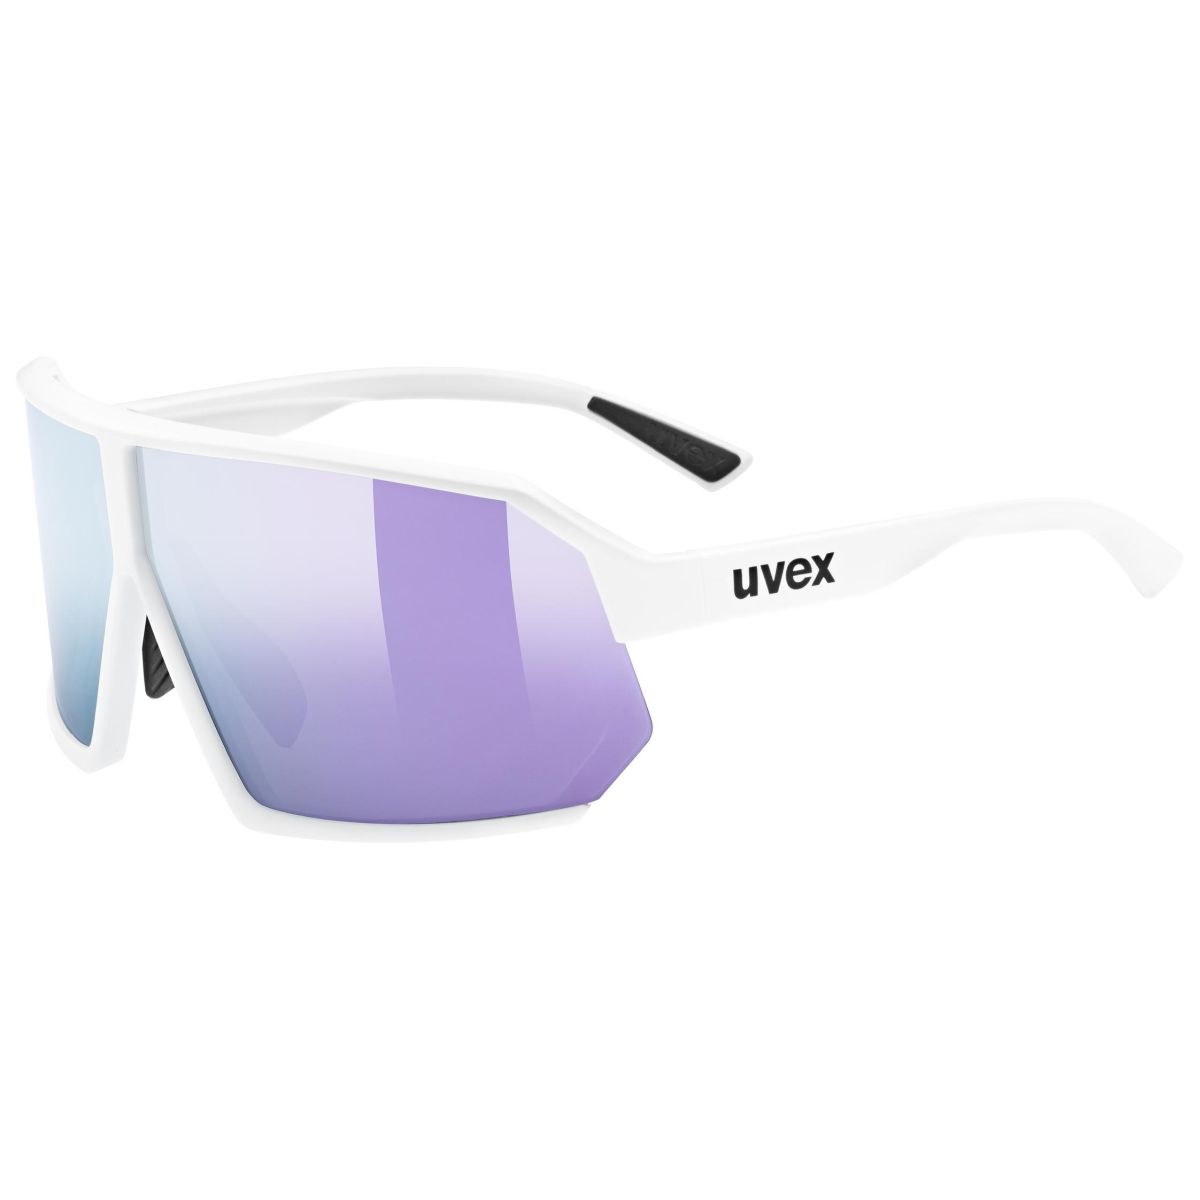 Produktbild von Uvex sportstyle 237 Brille - white matt/mirror lavender